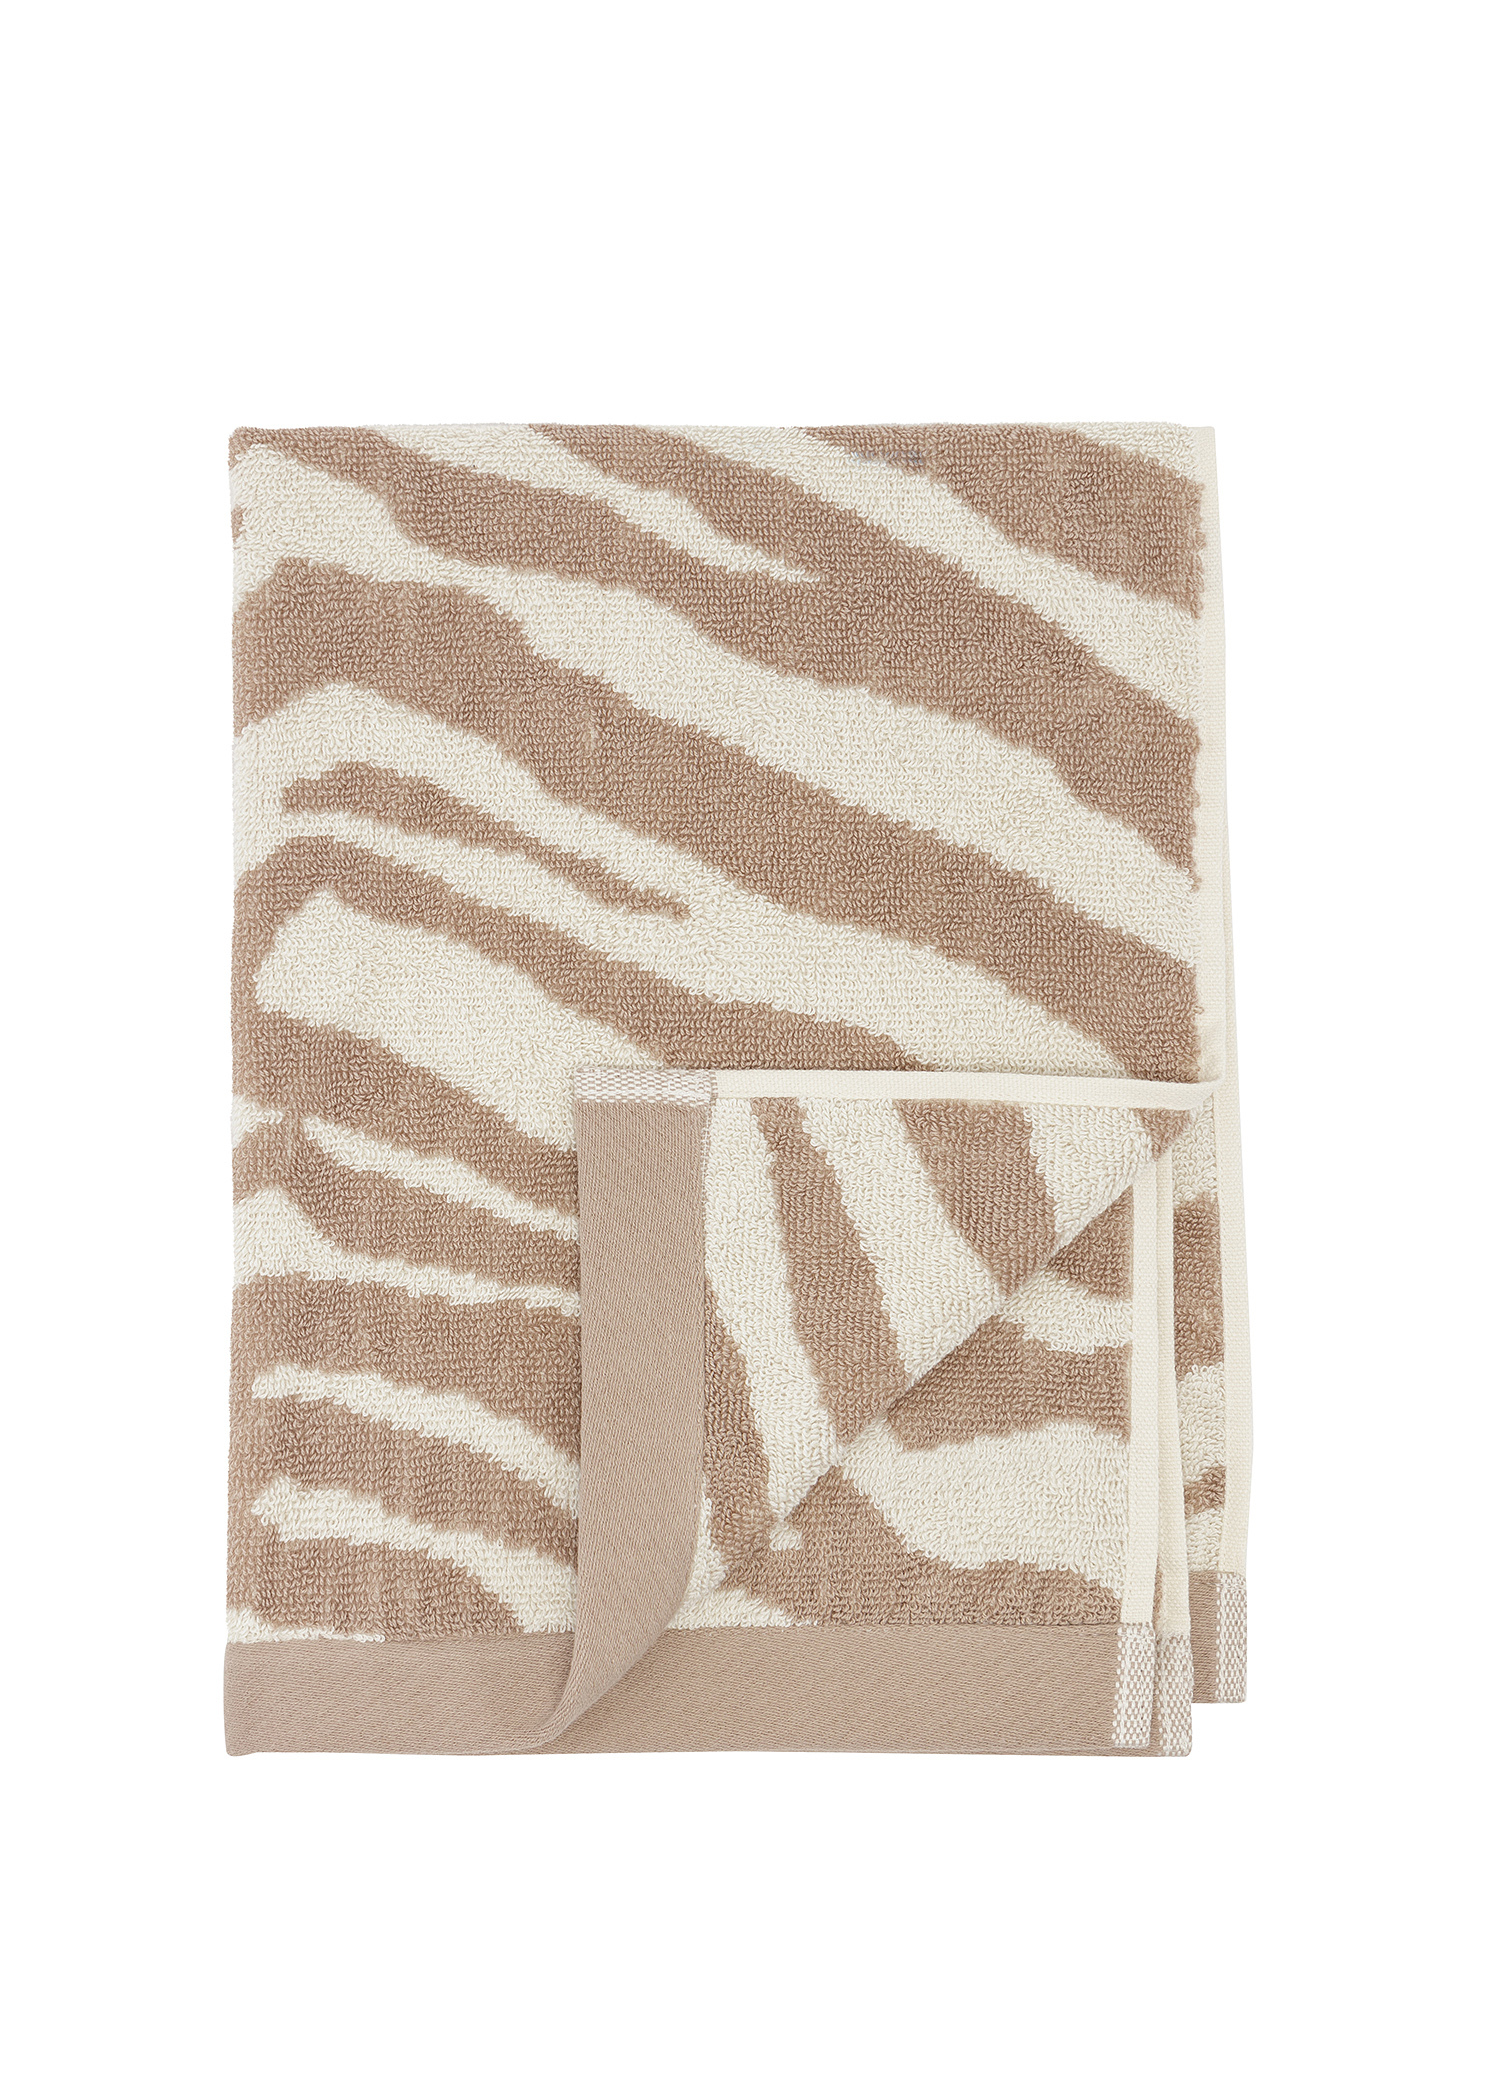 Zebra patterned towel Image 0